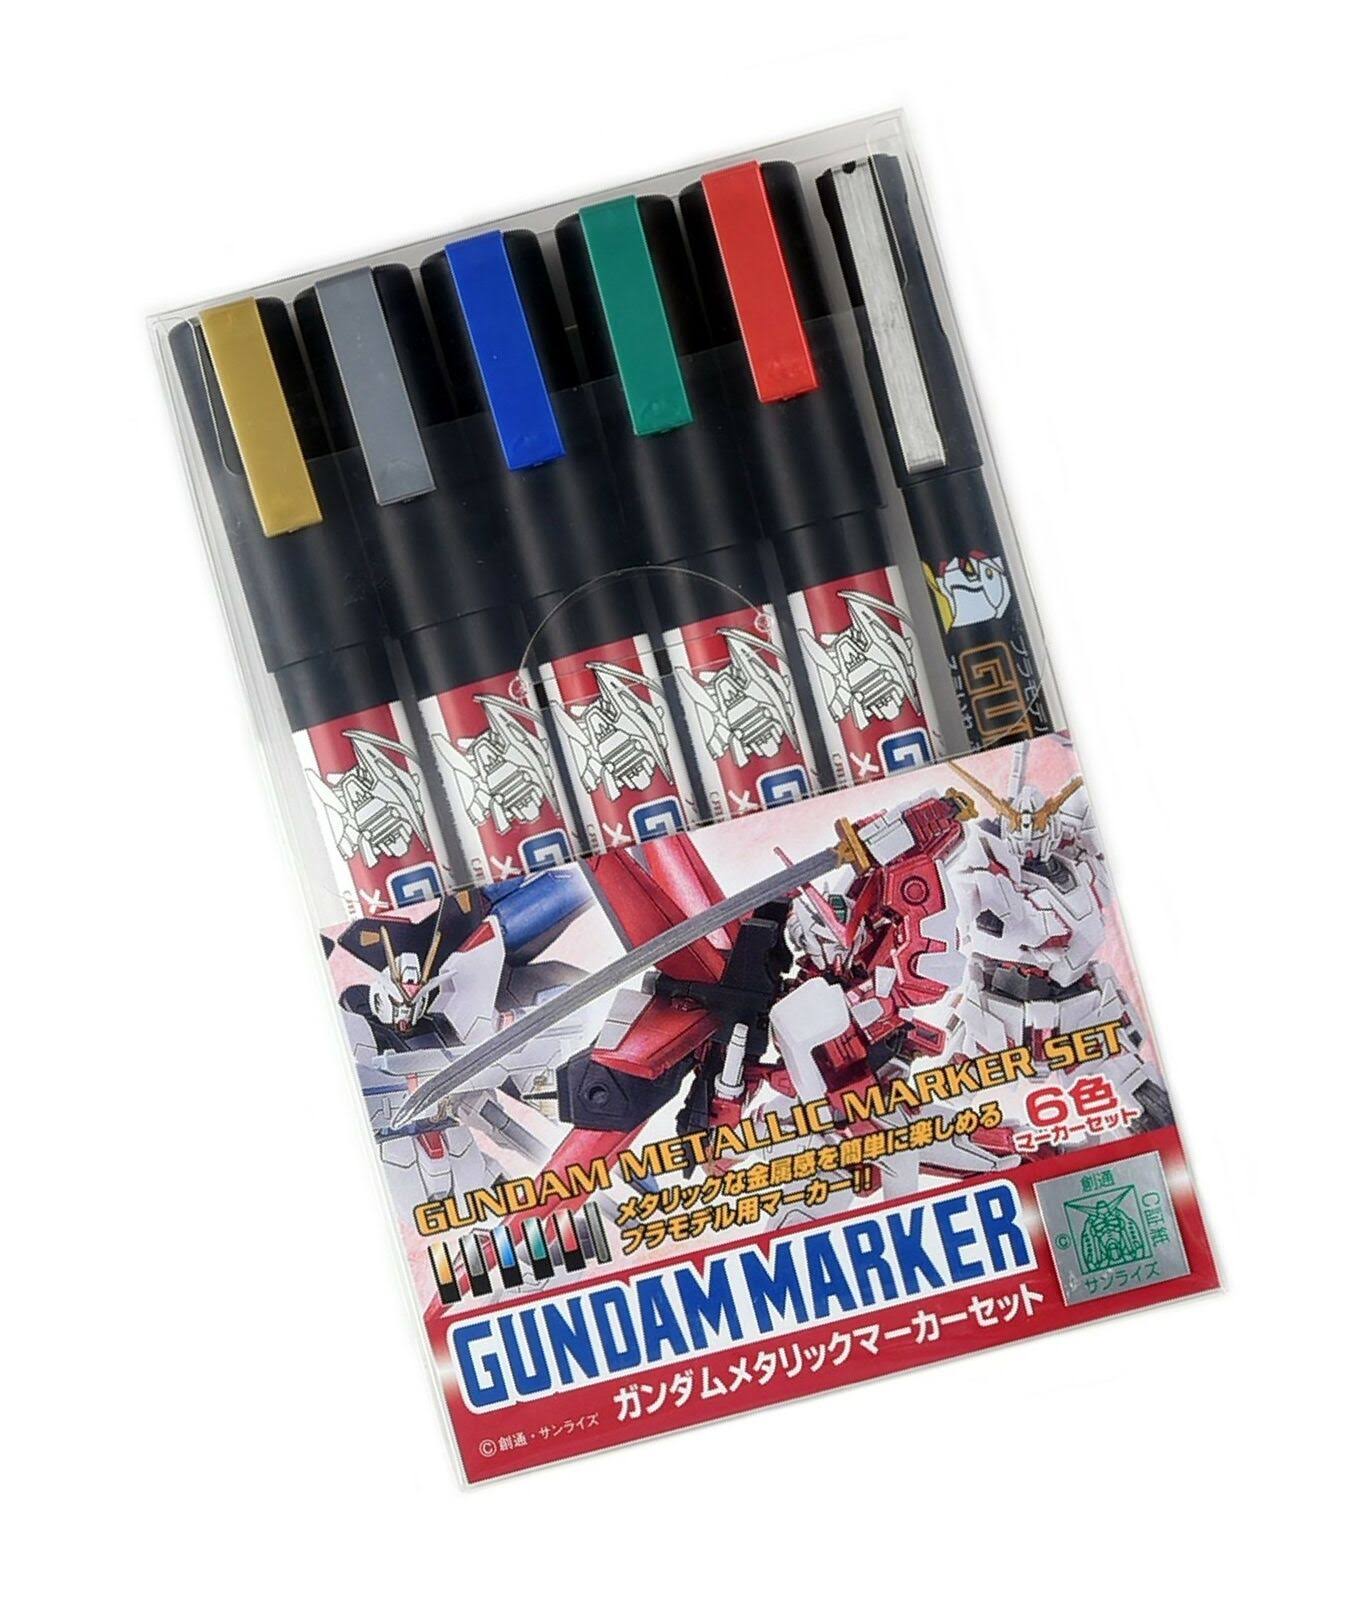 GSI Creos AMS 121 Gundam Metallic Marker Set - 6 Pieces